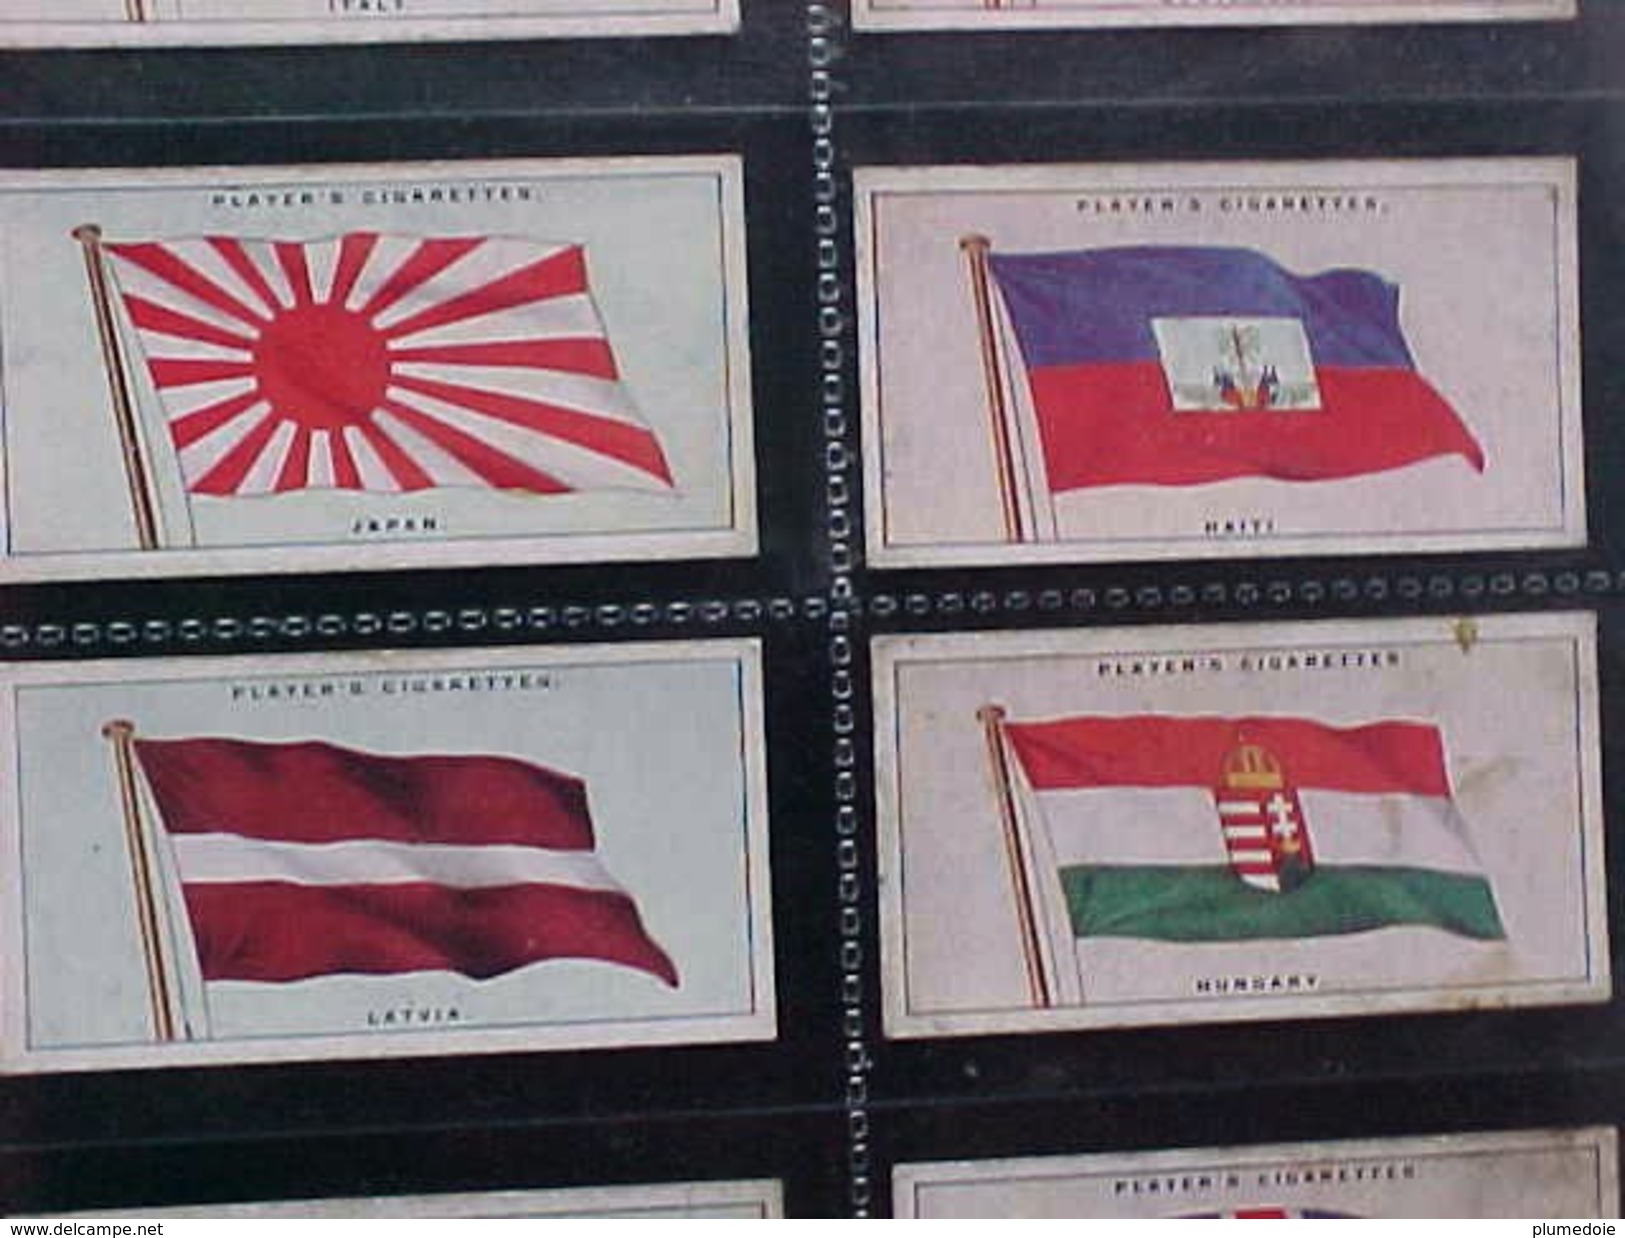 lot de 39 cartes CHROMOS  CIGARETTES PLAYER'S de 1928 , DRAPEAUX , FLAGS OF THE LEAGUE OF NATIONS, 39 cards